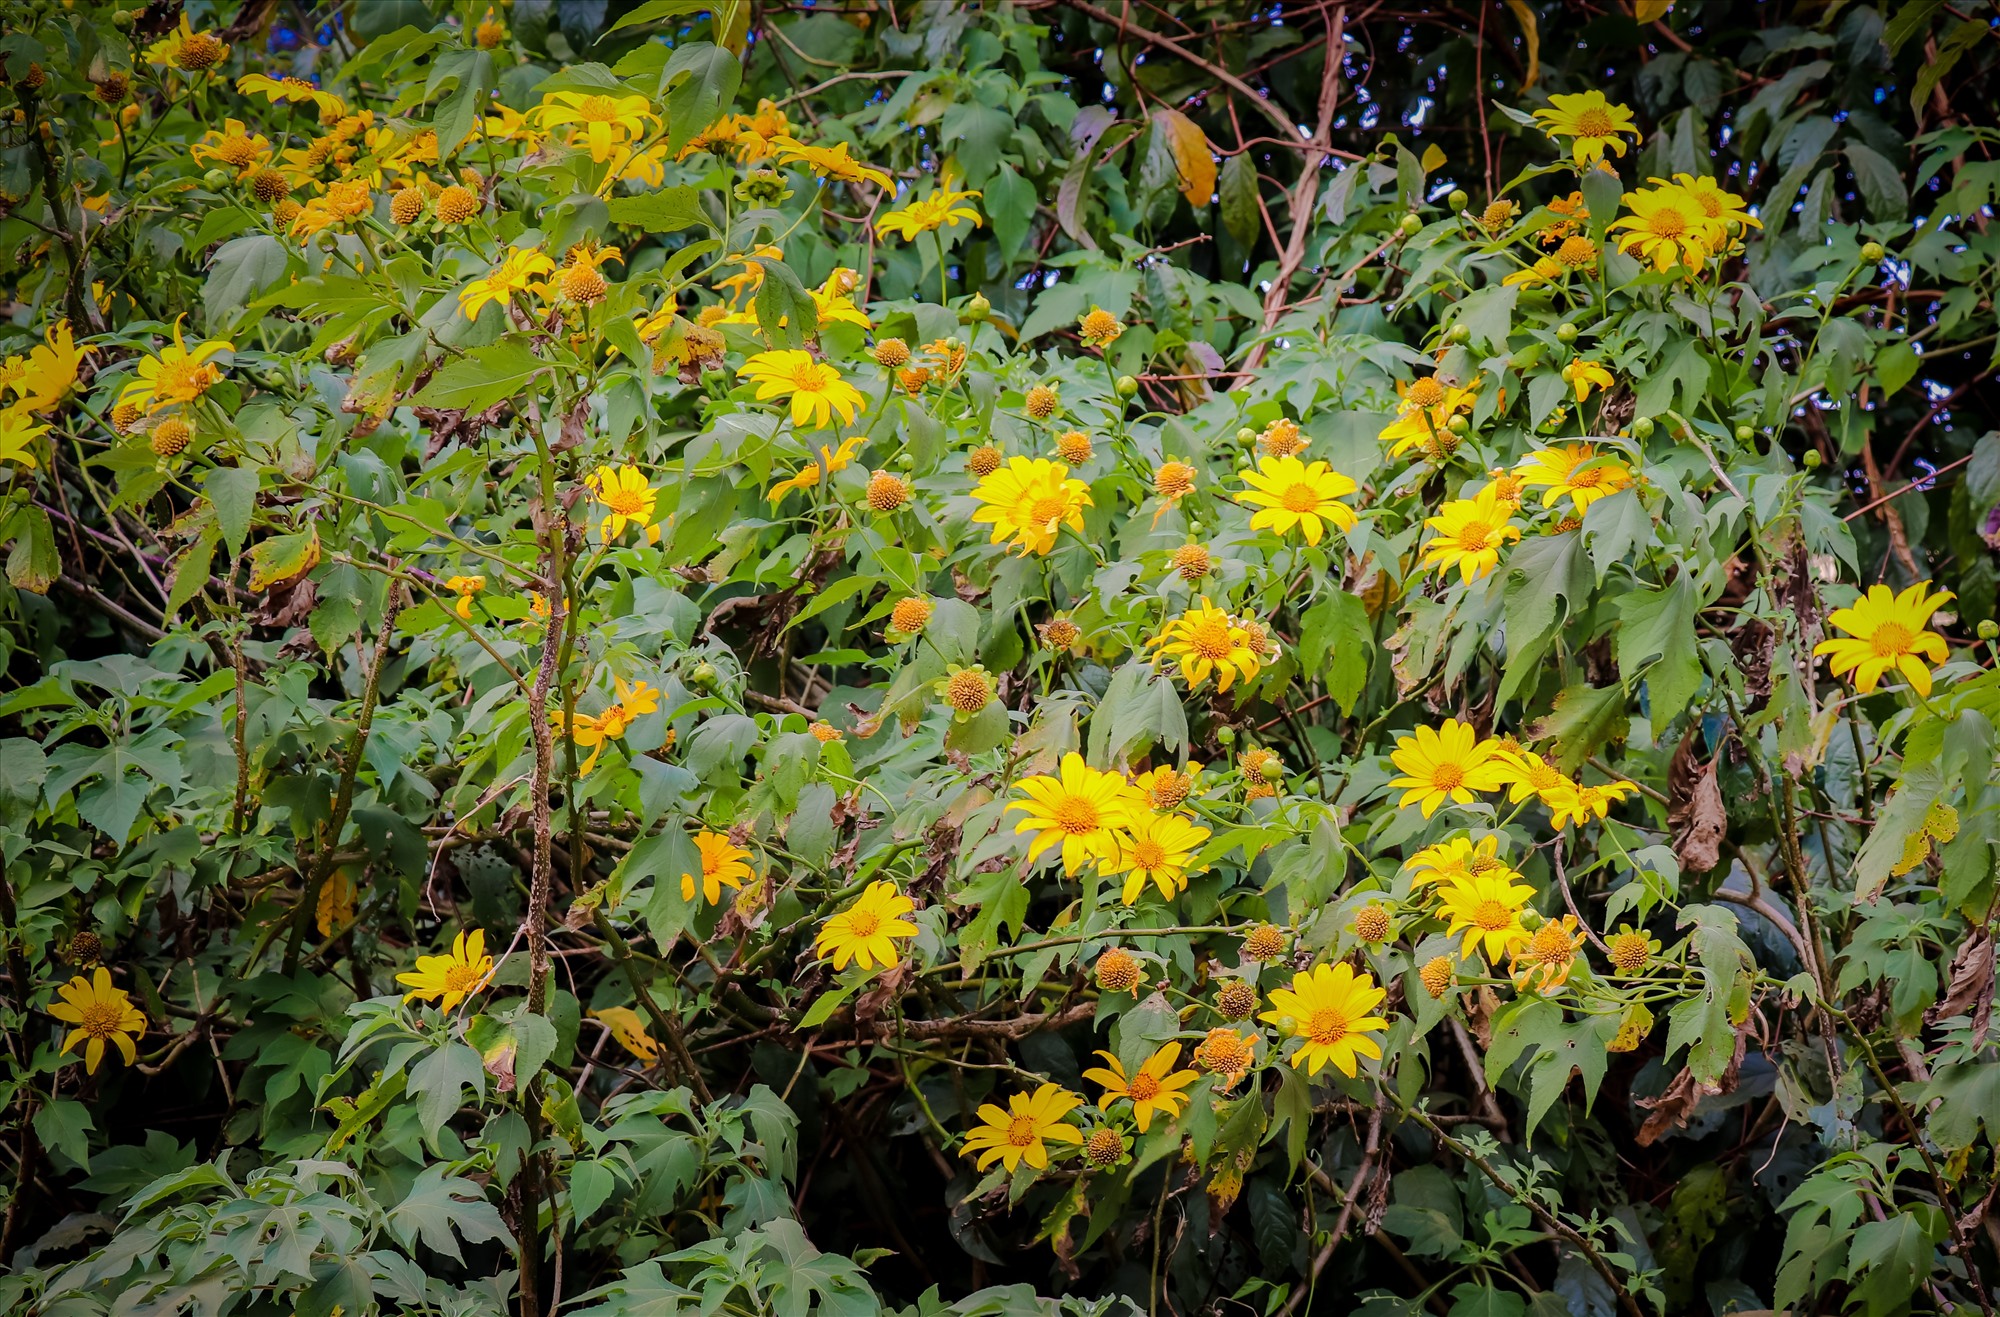 Hoa dã quỳ thường nở rộ khắp các vùng rừng núi vào khoảng thời gian cuối tháng 10 đến tháng 11 hàng năm